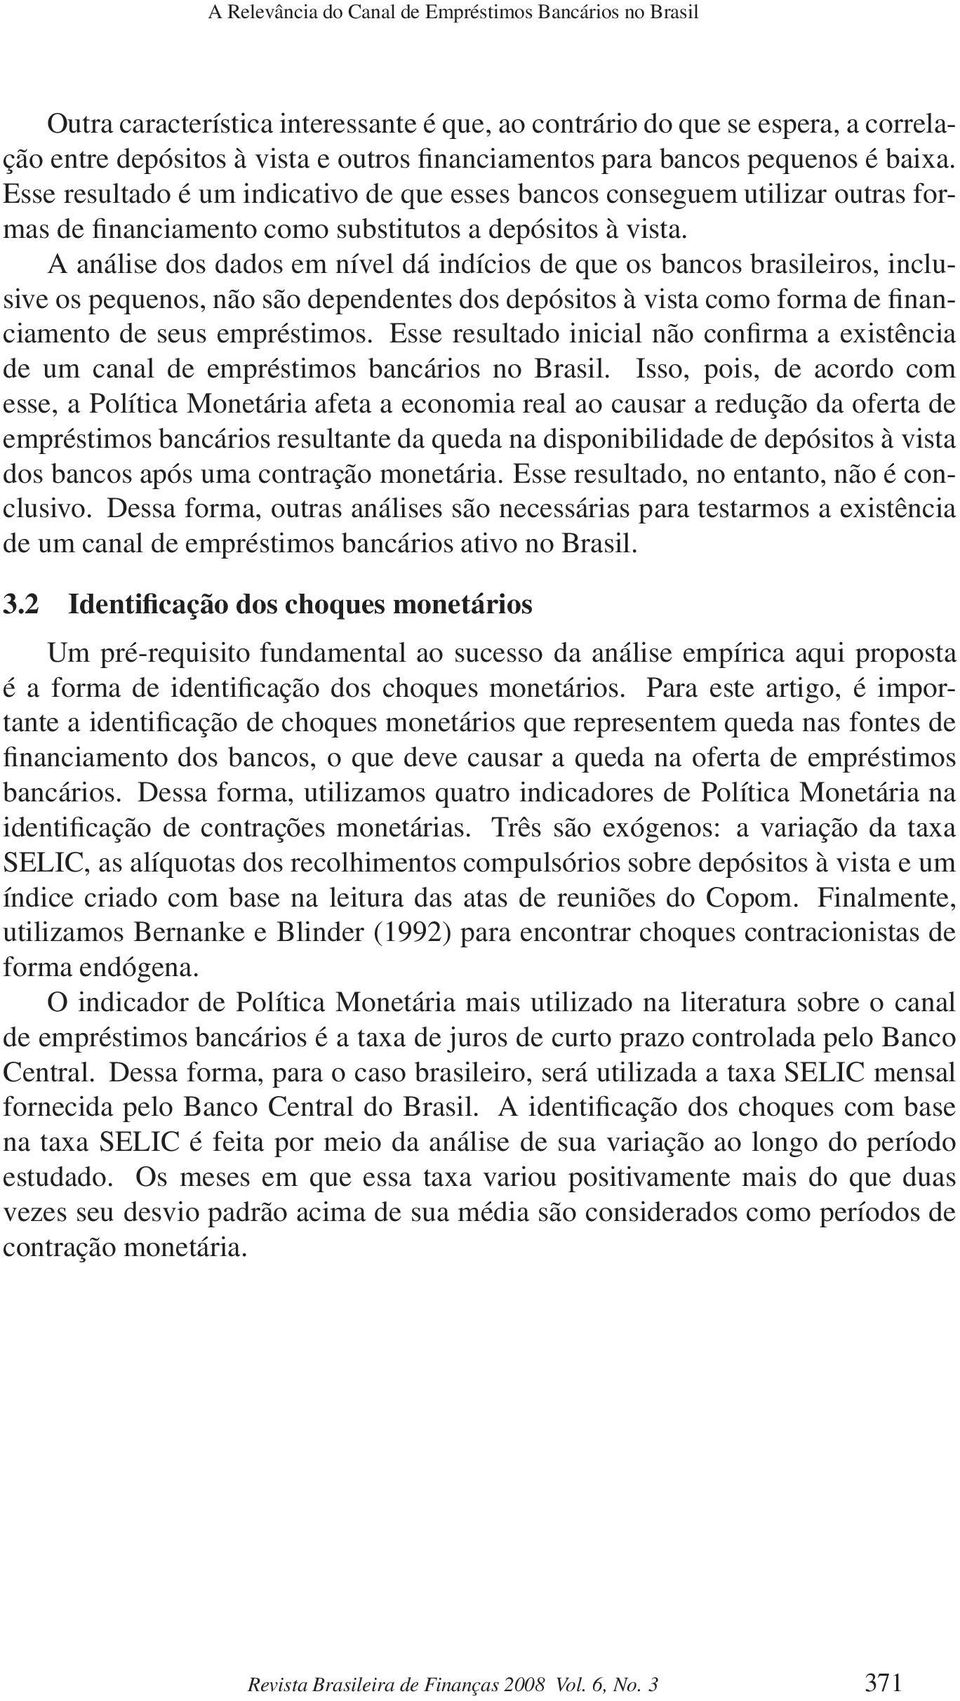 A análise dos dados em nível dá indícios de que os bancos brasileiros, inclusive os pequenos, não são dependentes dos depósitos à vista como forma de financiamento de seus empréstimos.